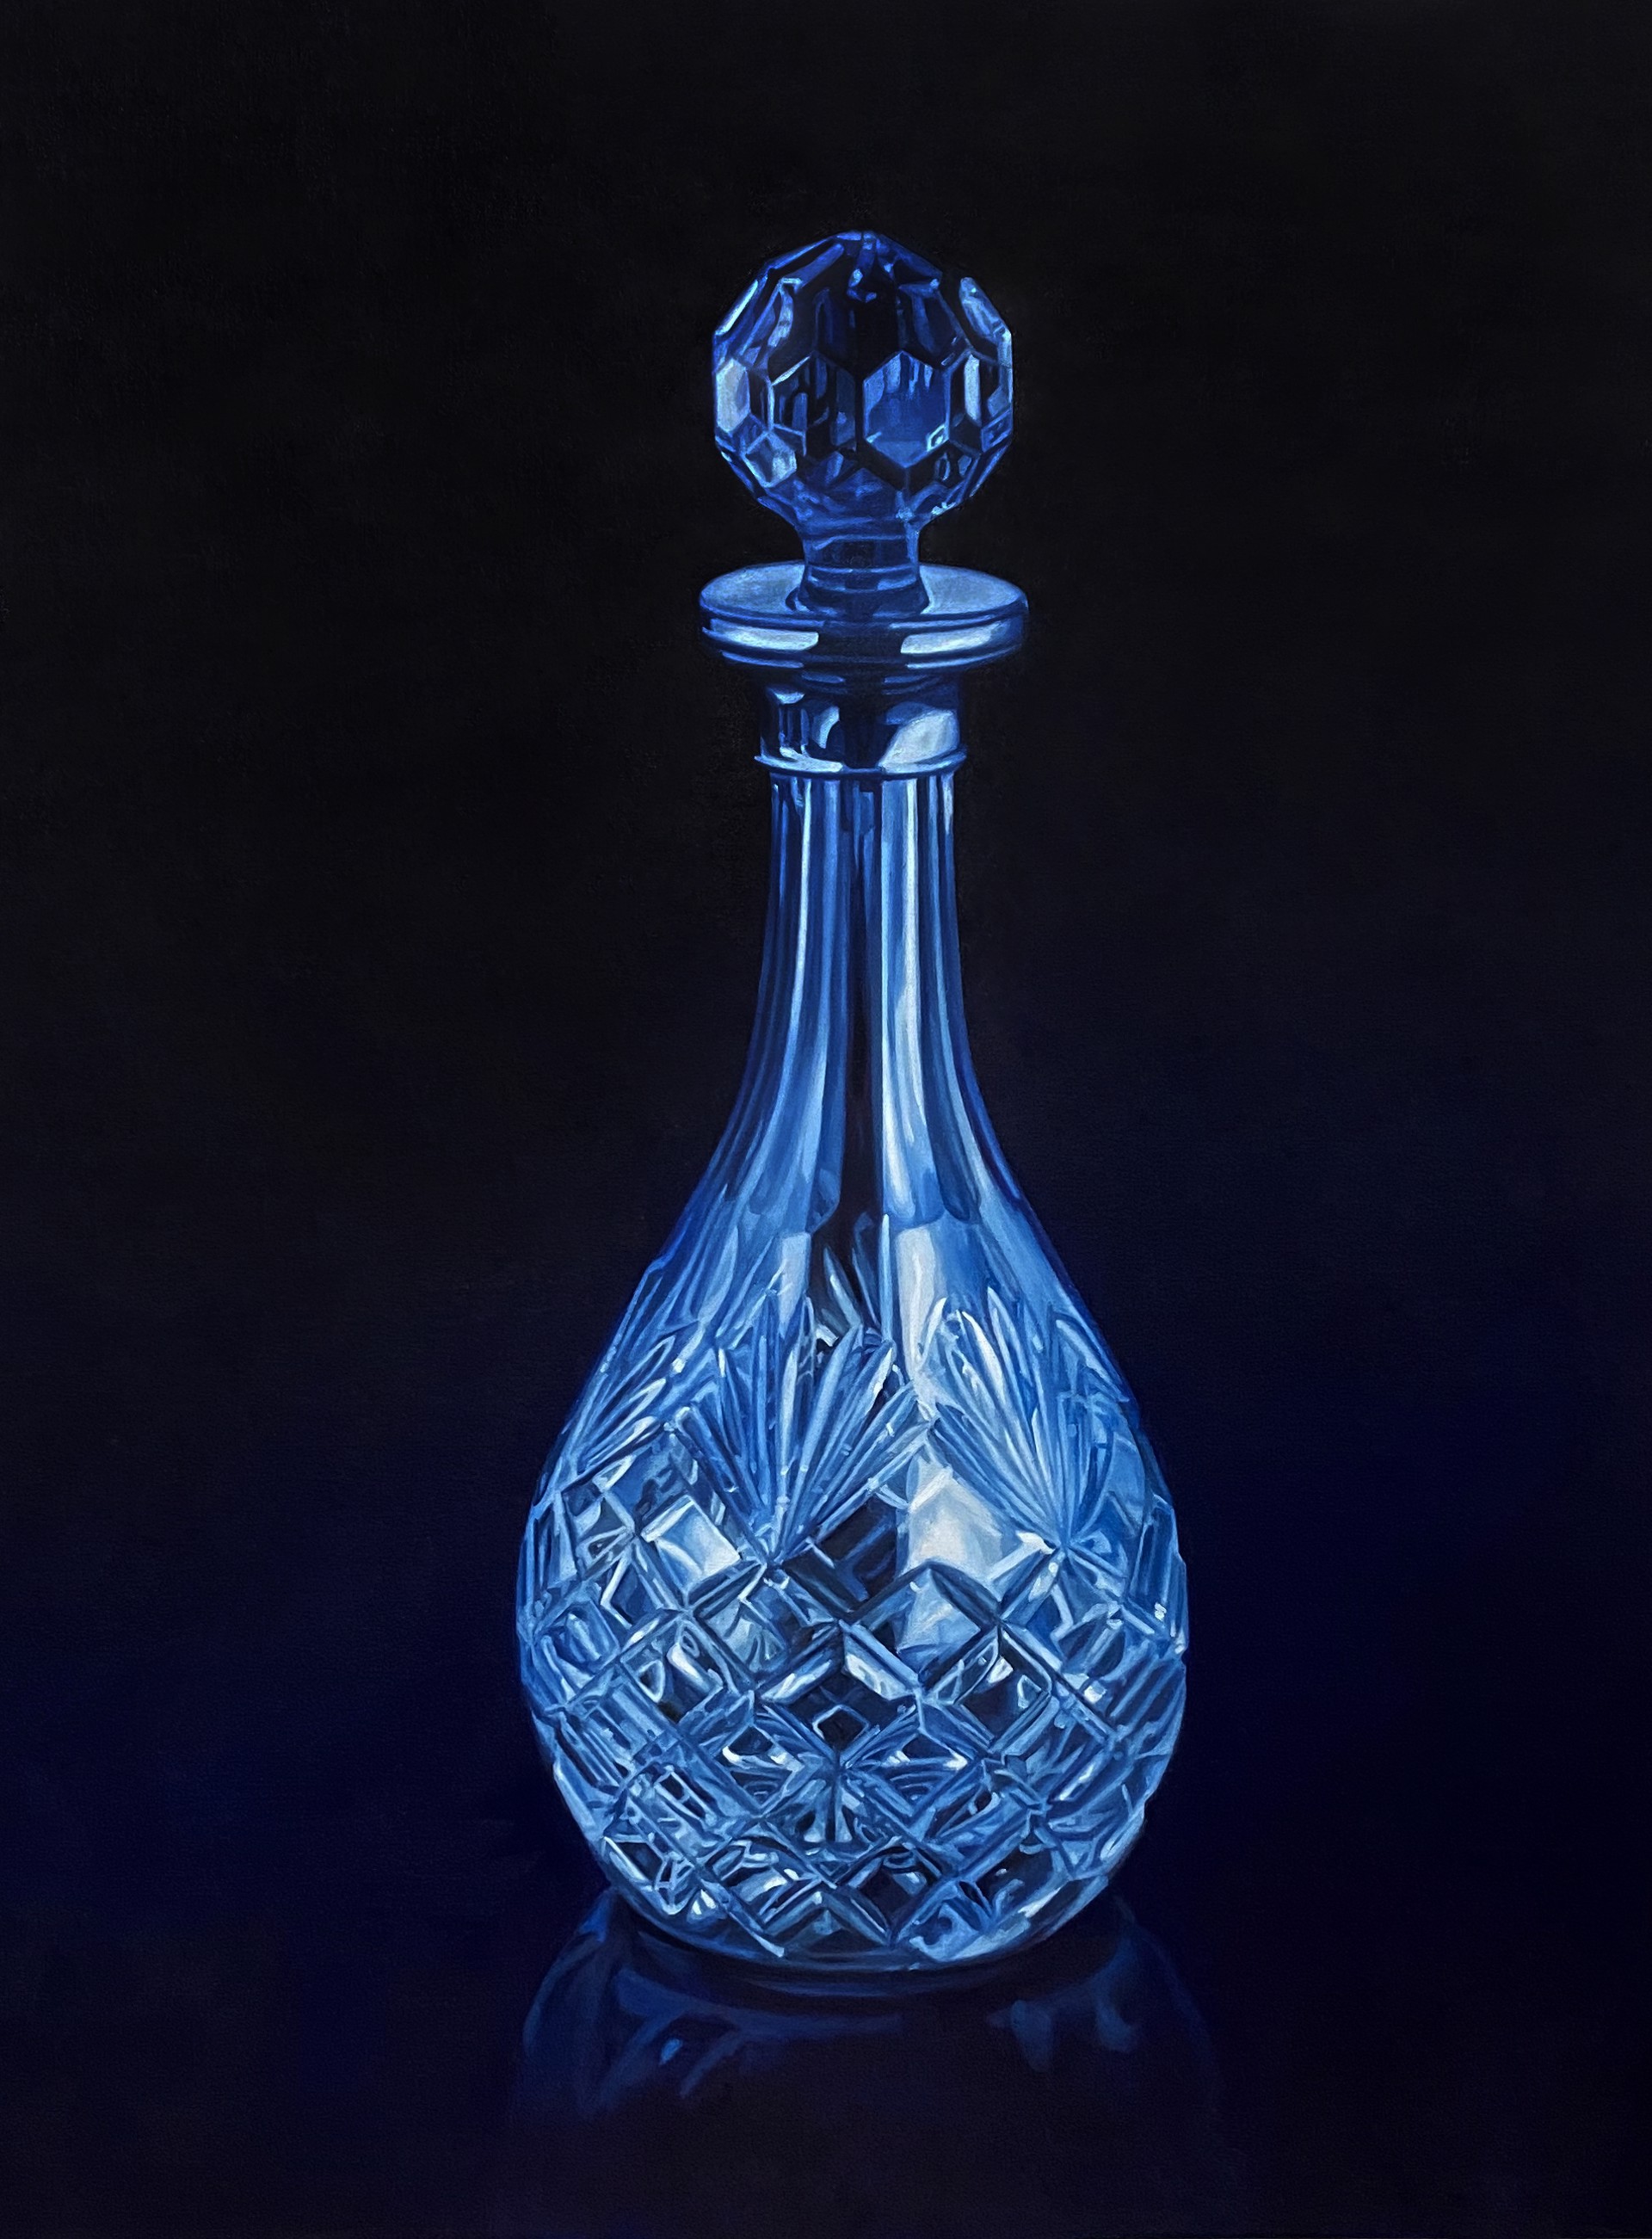 Crystal Decanter II by Inkyeong Baek